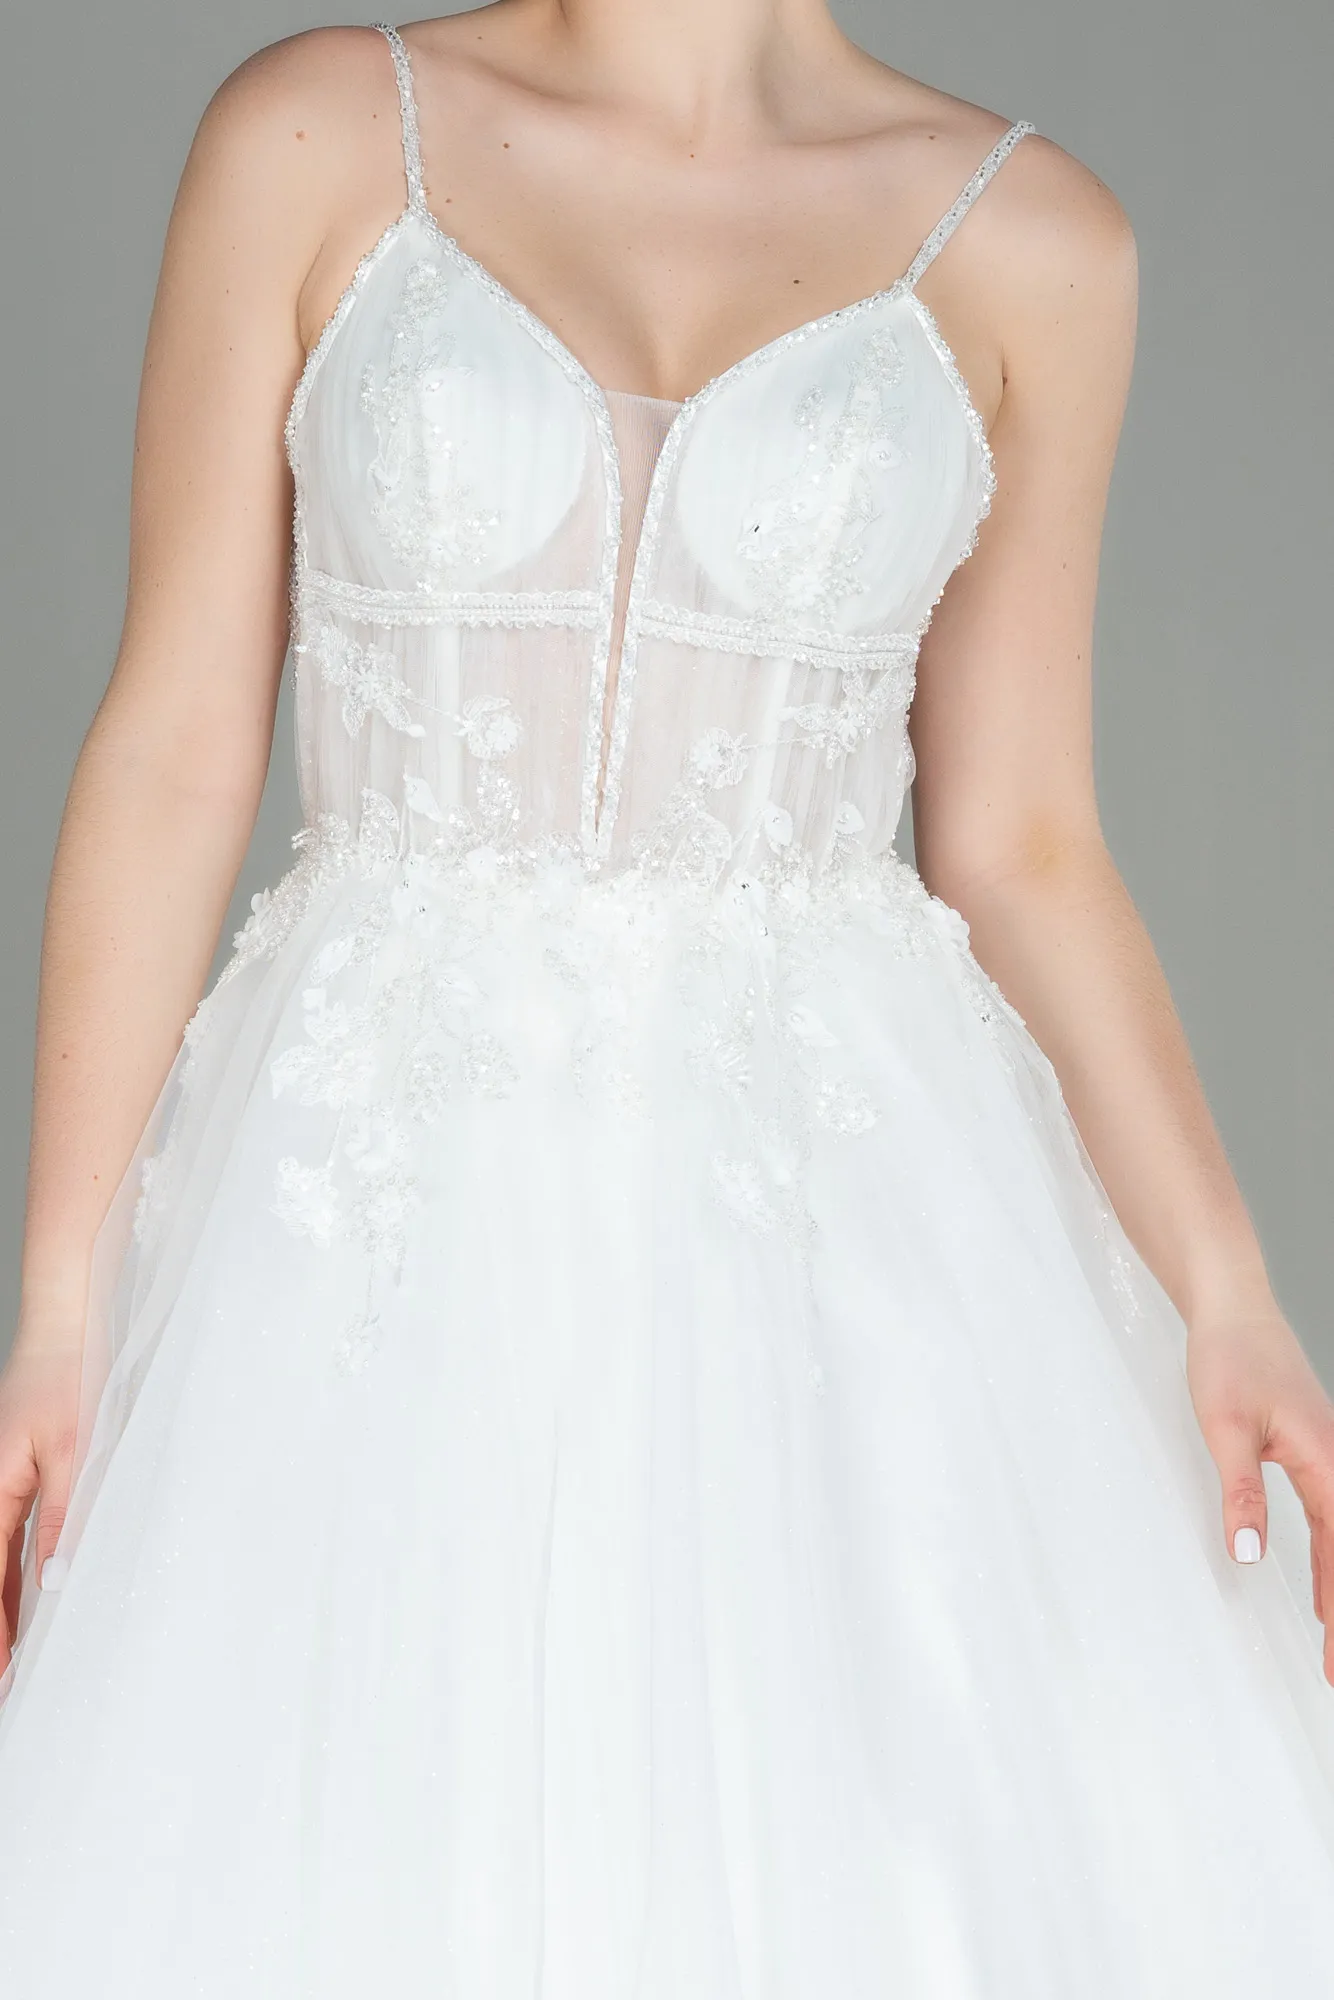 Ecru-Wedding Dress ABG014